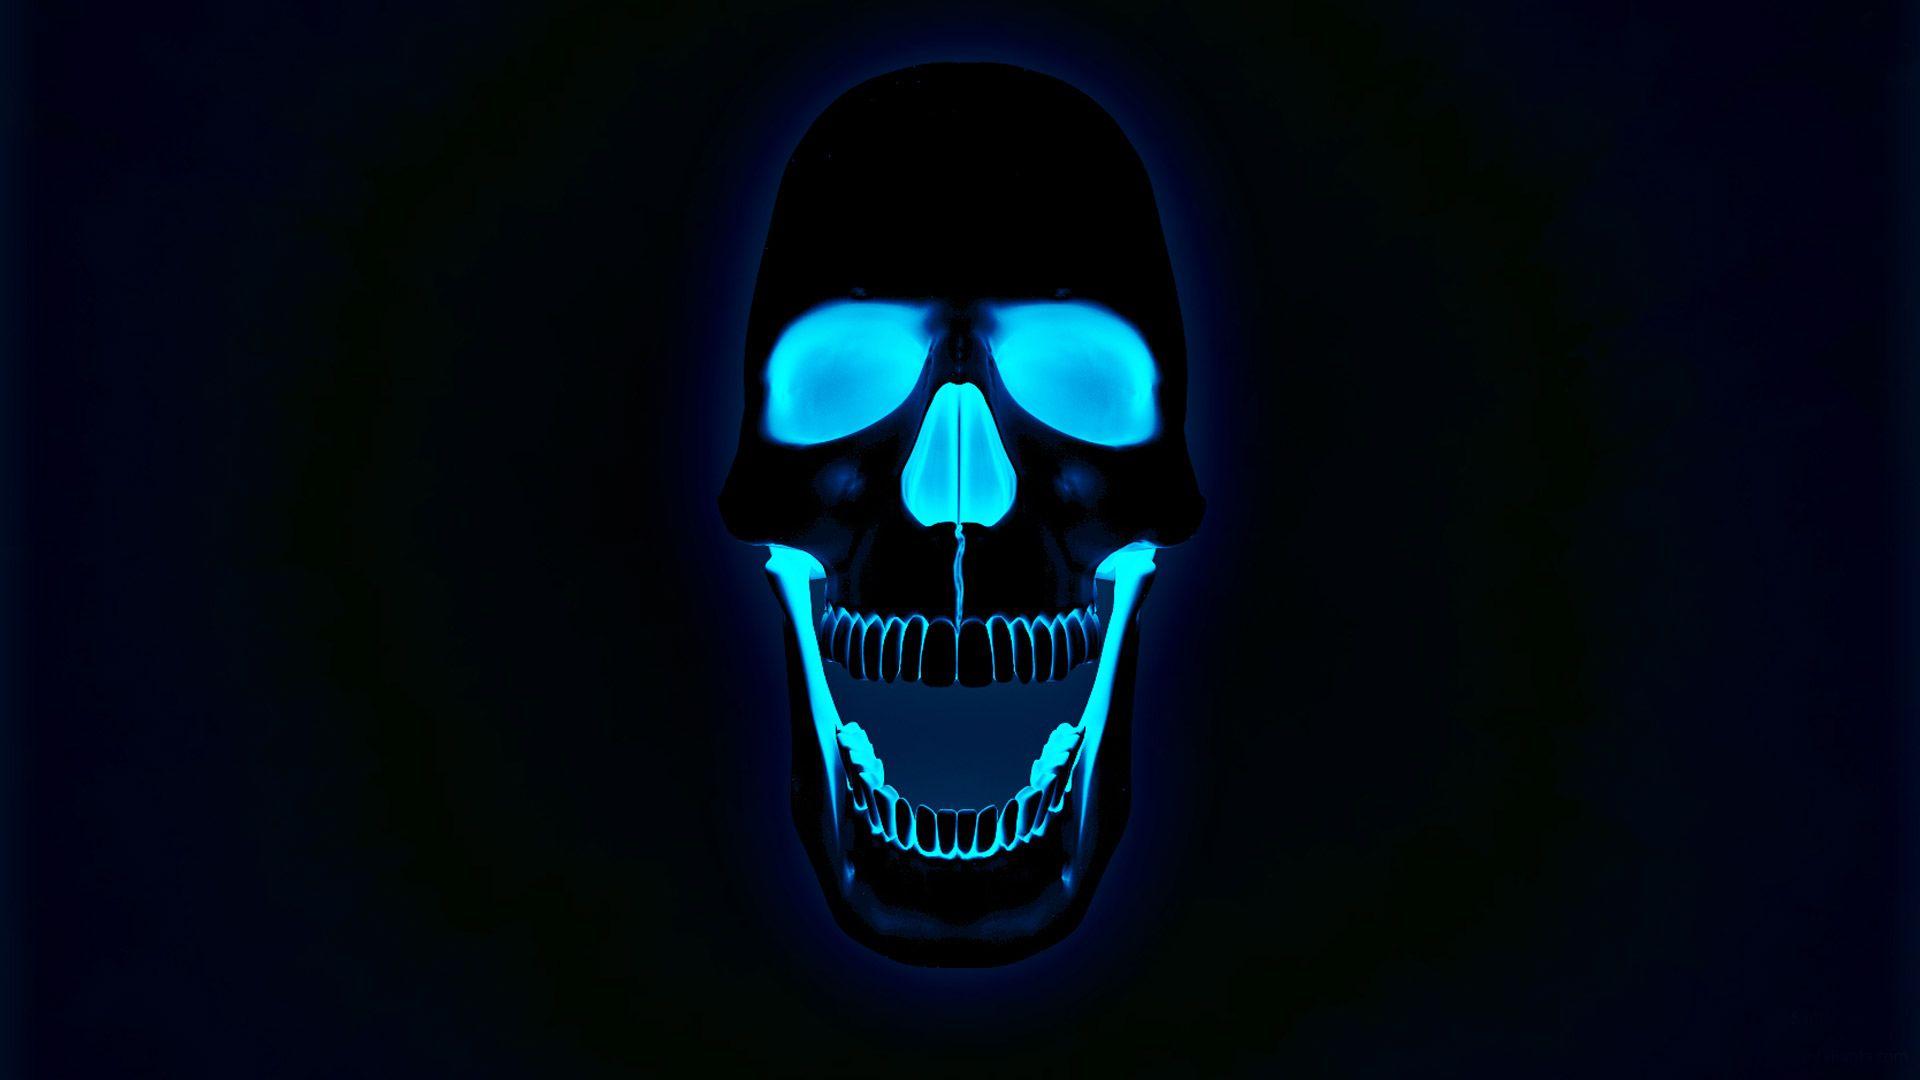 Glowing neon skull wallpaper. Wallpaper. Skull